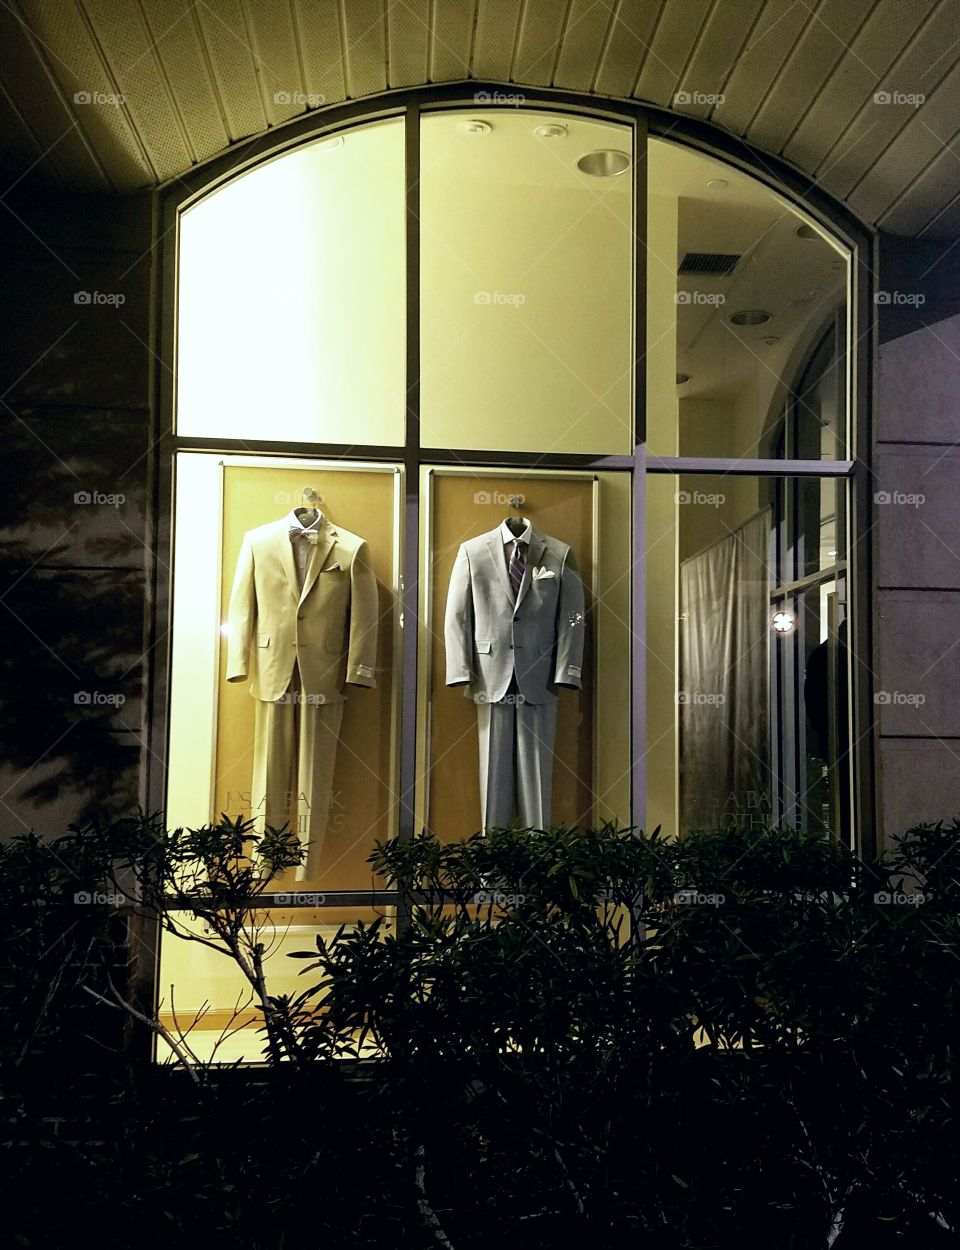 Men's suits